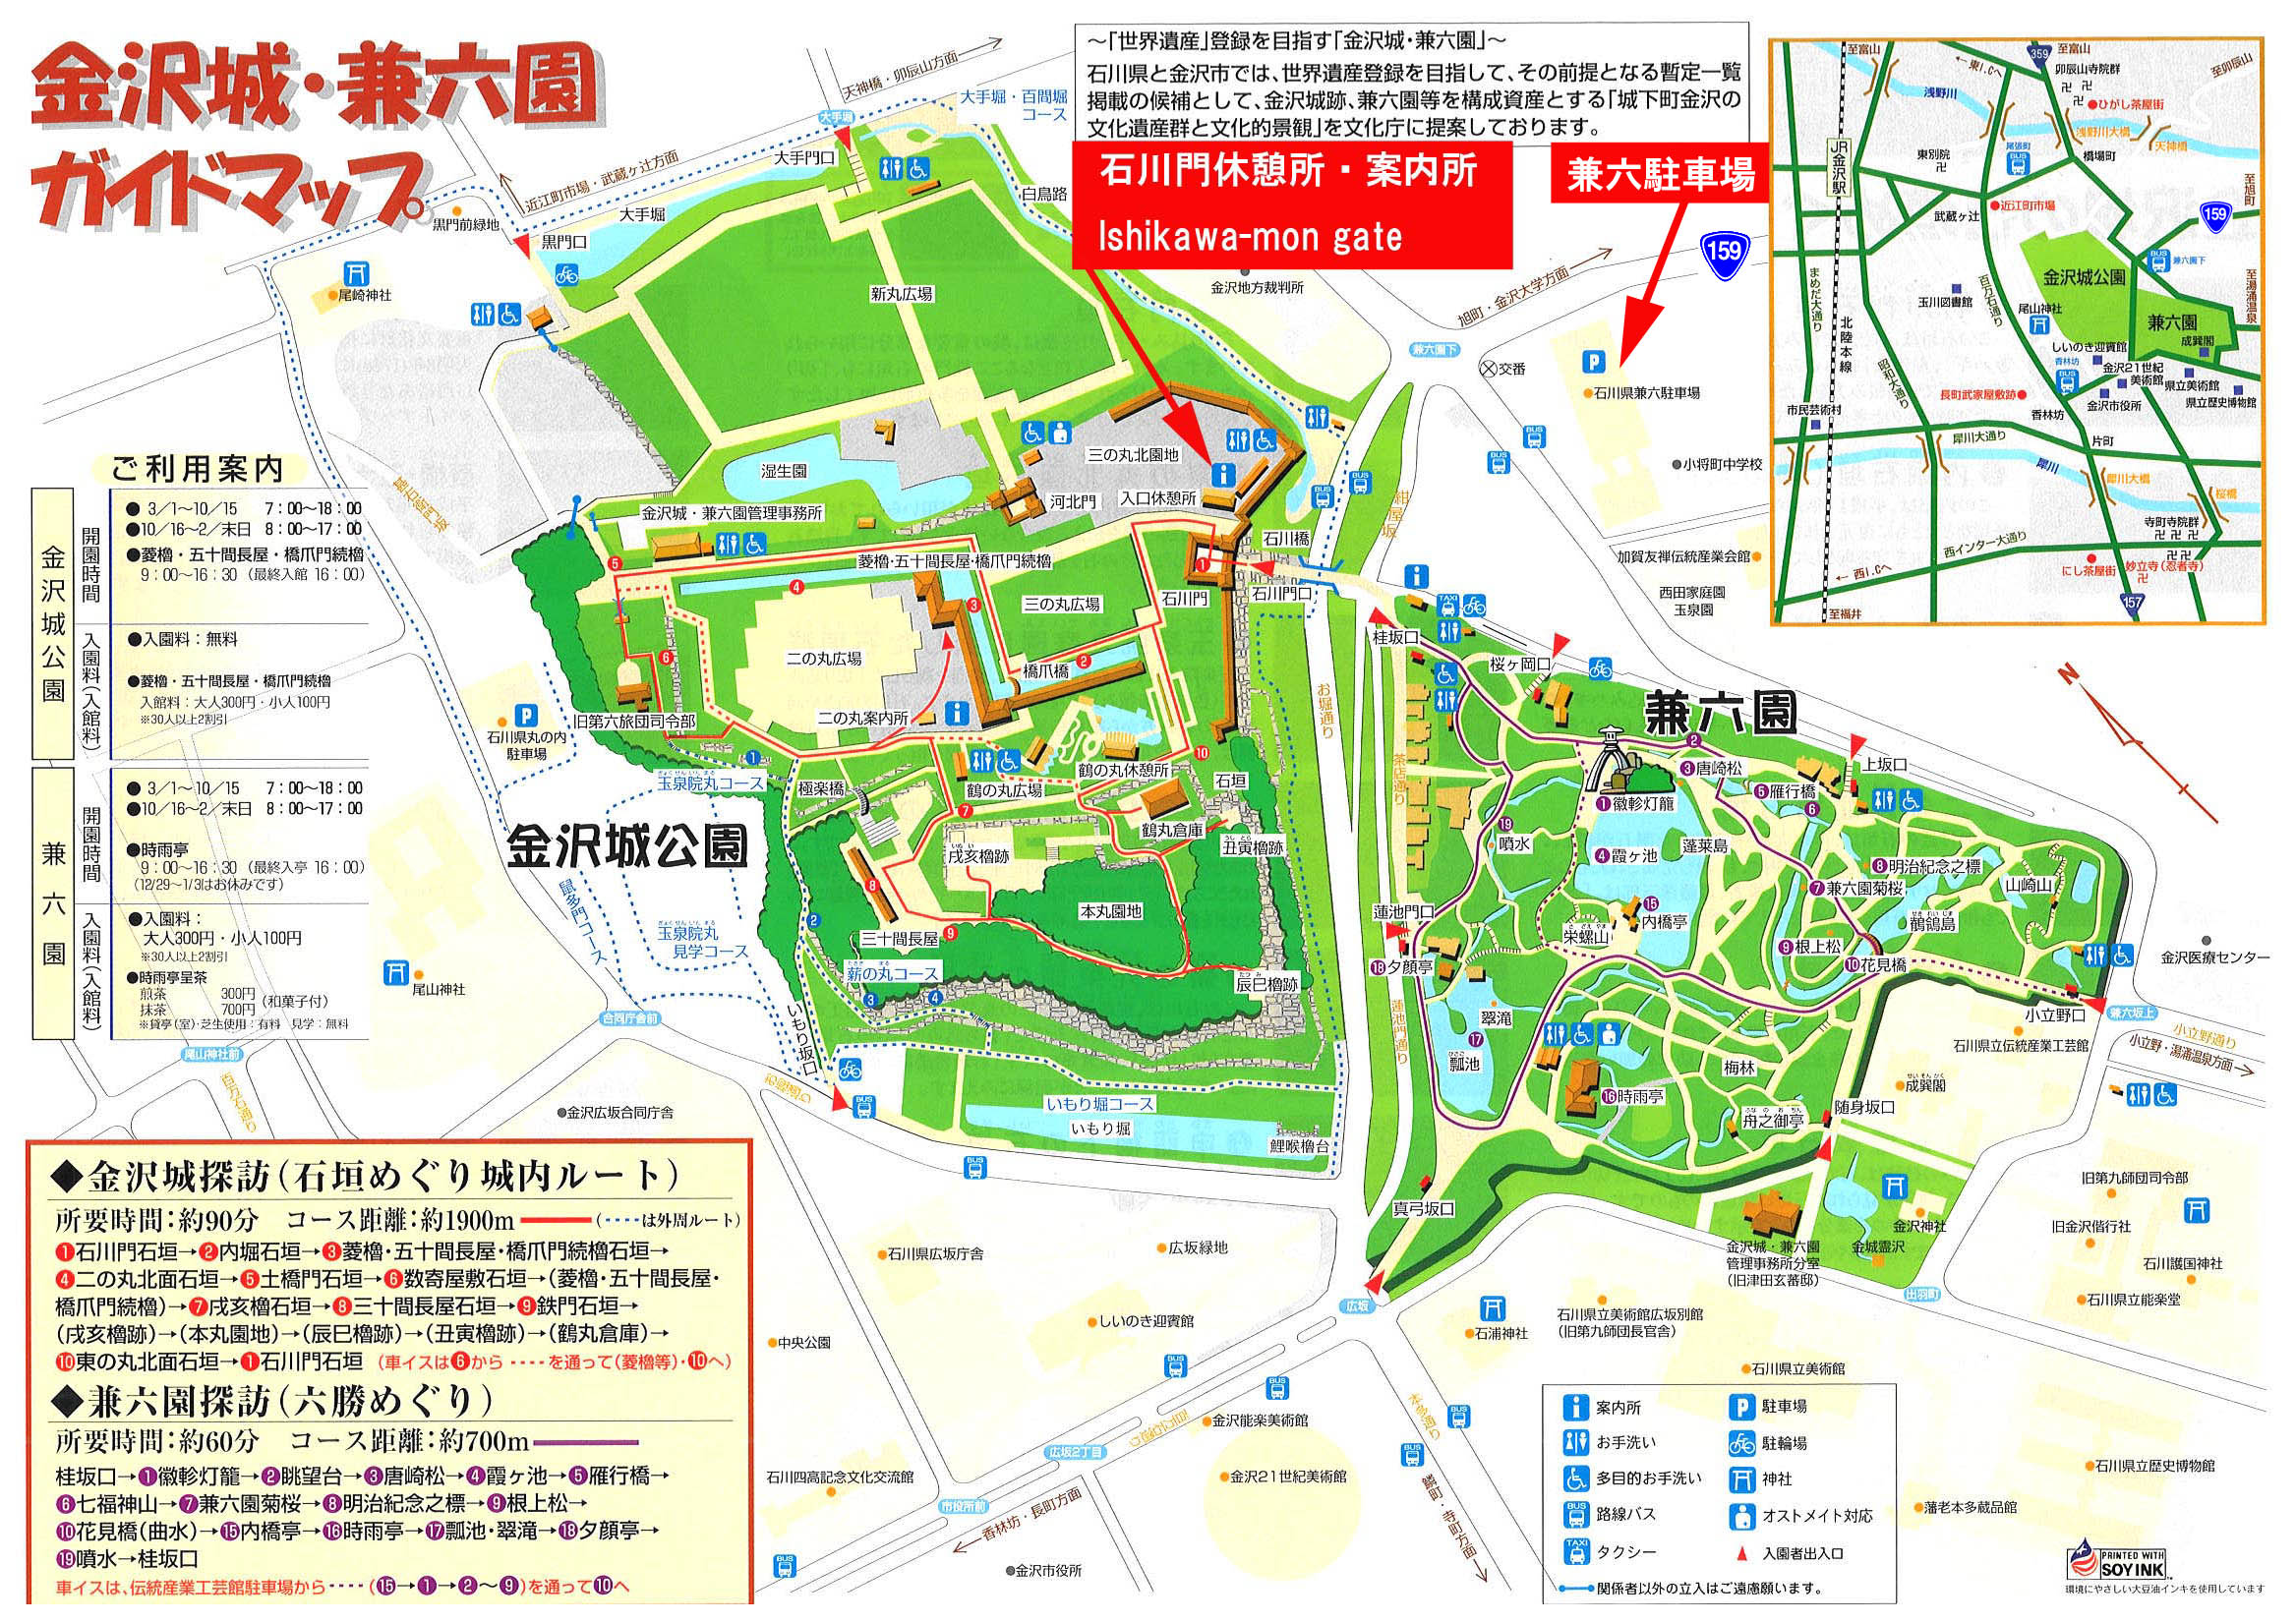 金澤城與兼六園地圖(資料來源:官網)可點我看大圖